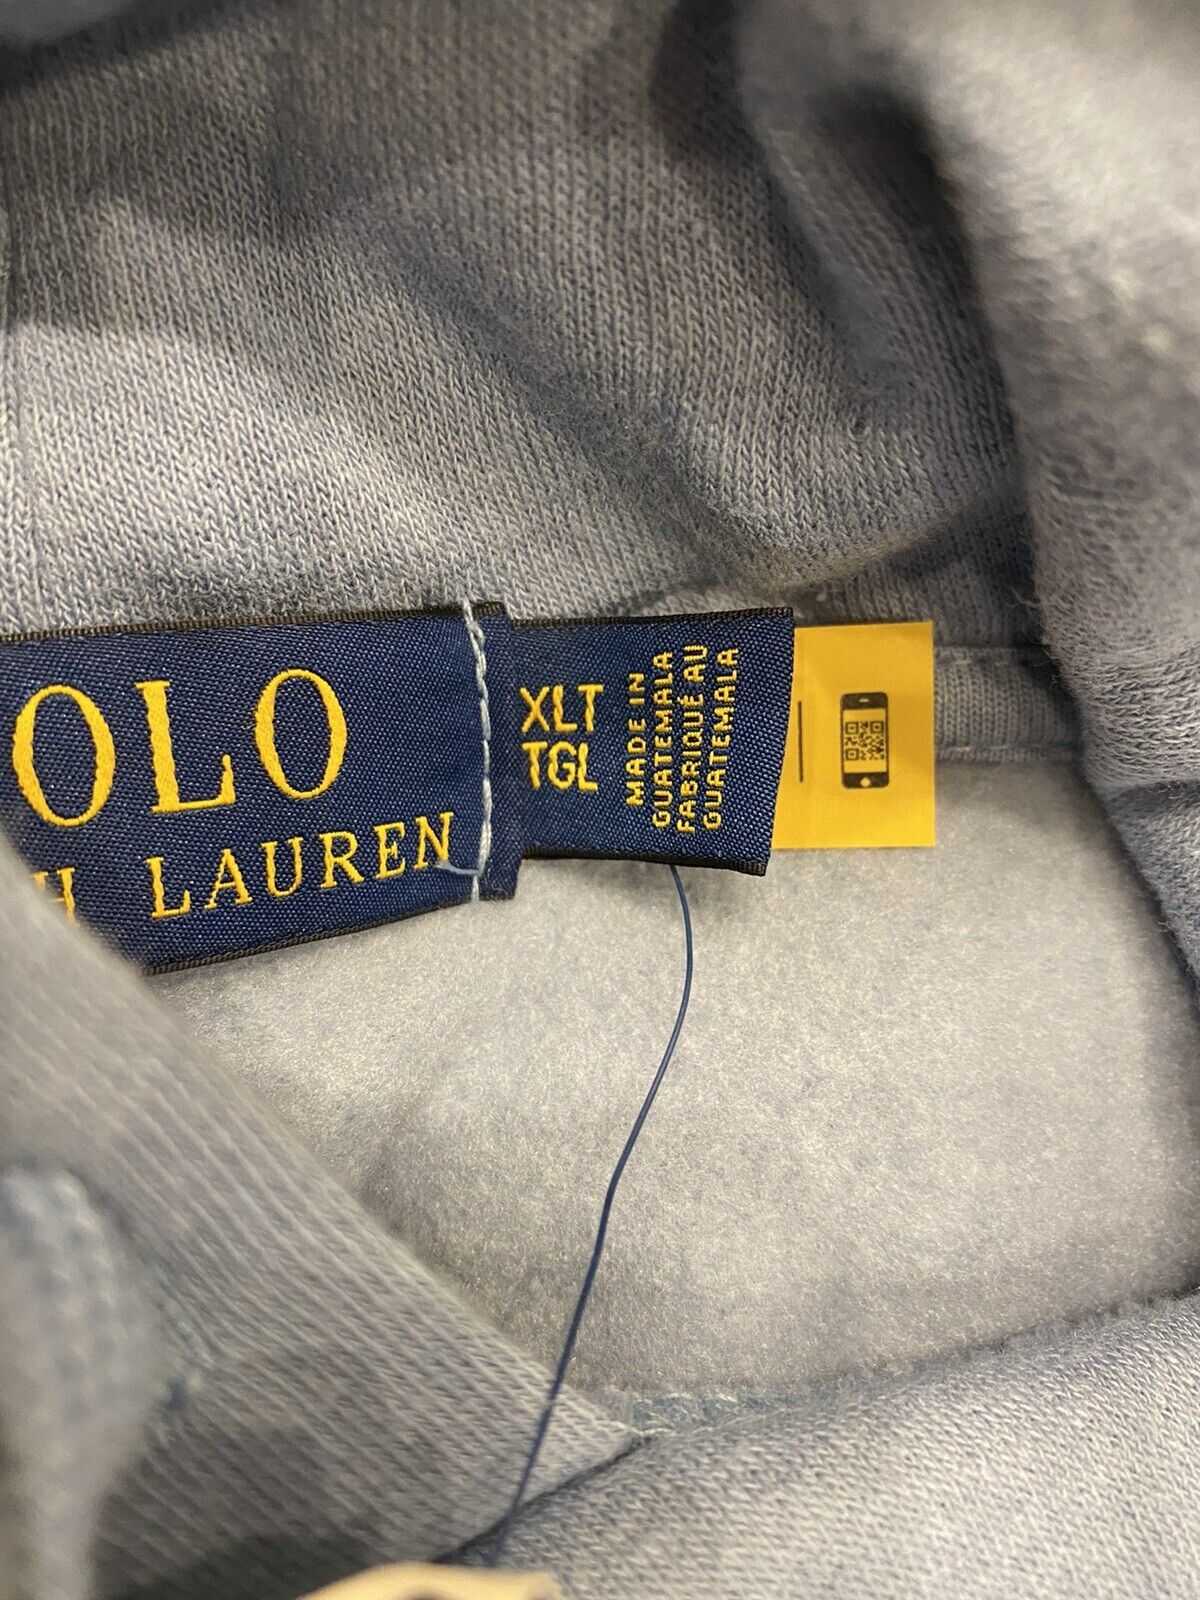 Новый свитер Polo Ralph Lauren с медведем с длинными рукавами и худи синего цвета XLT/TGL за 188 долларов 